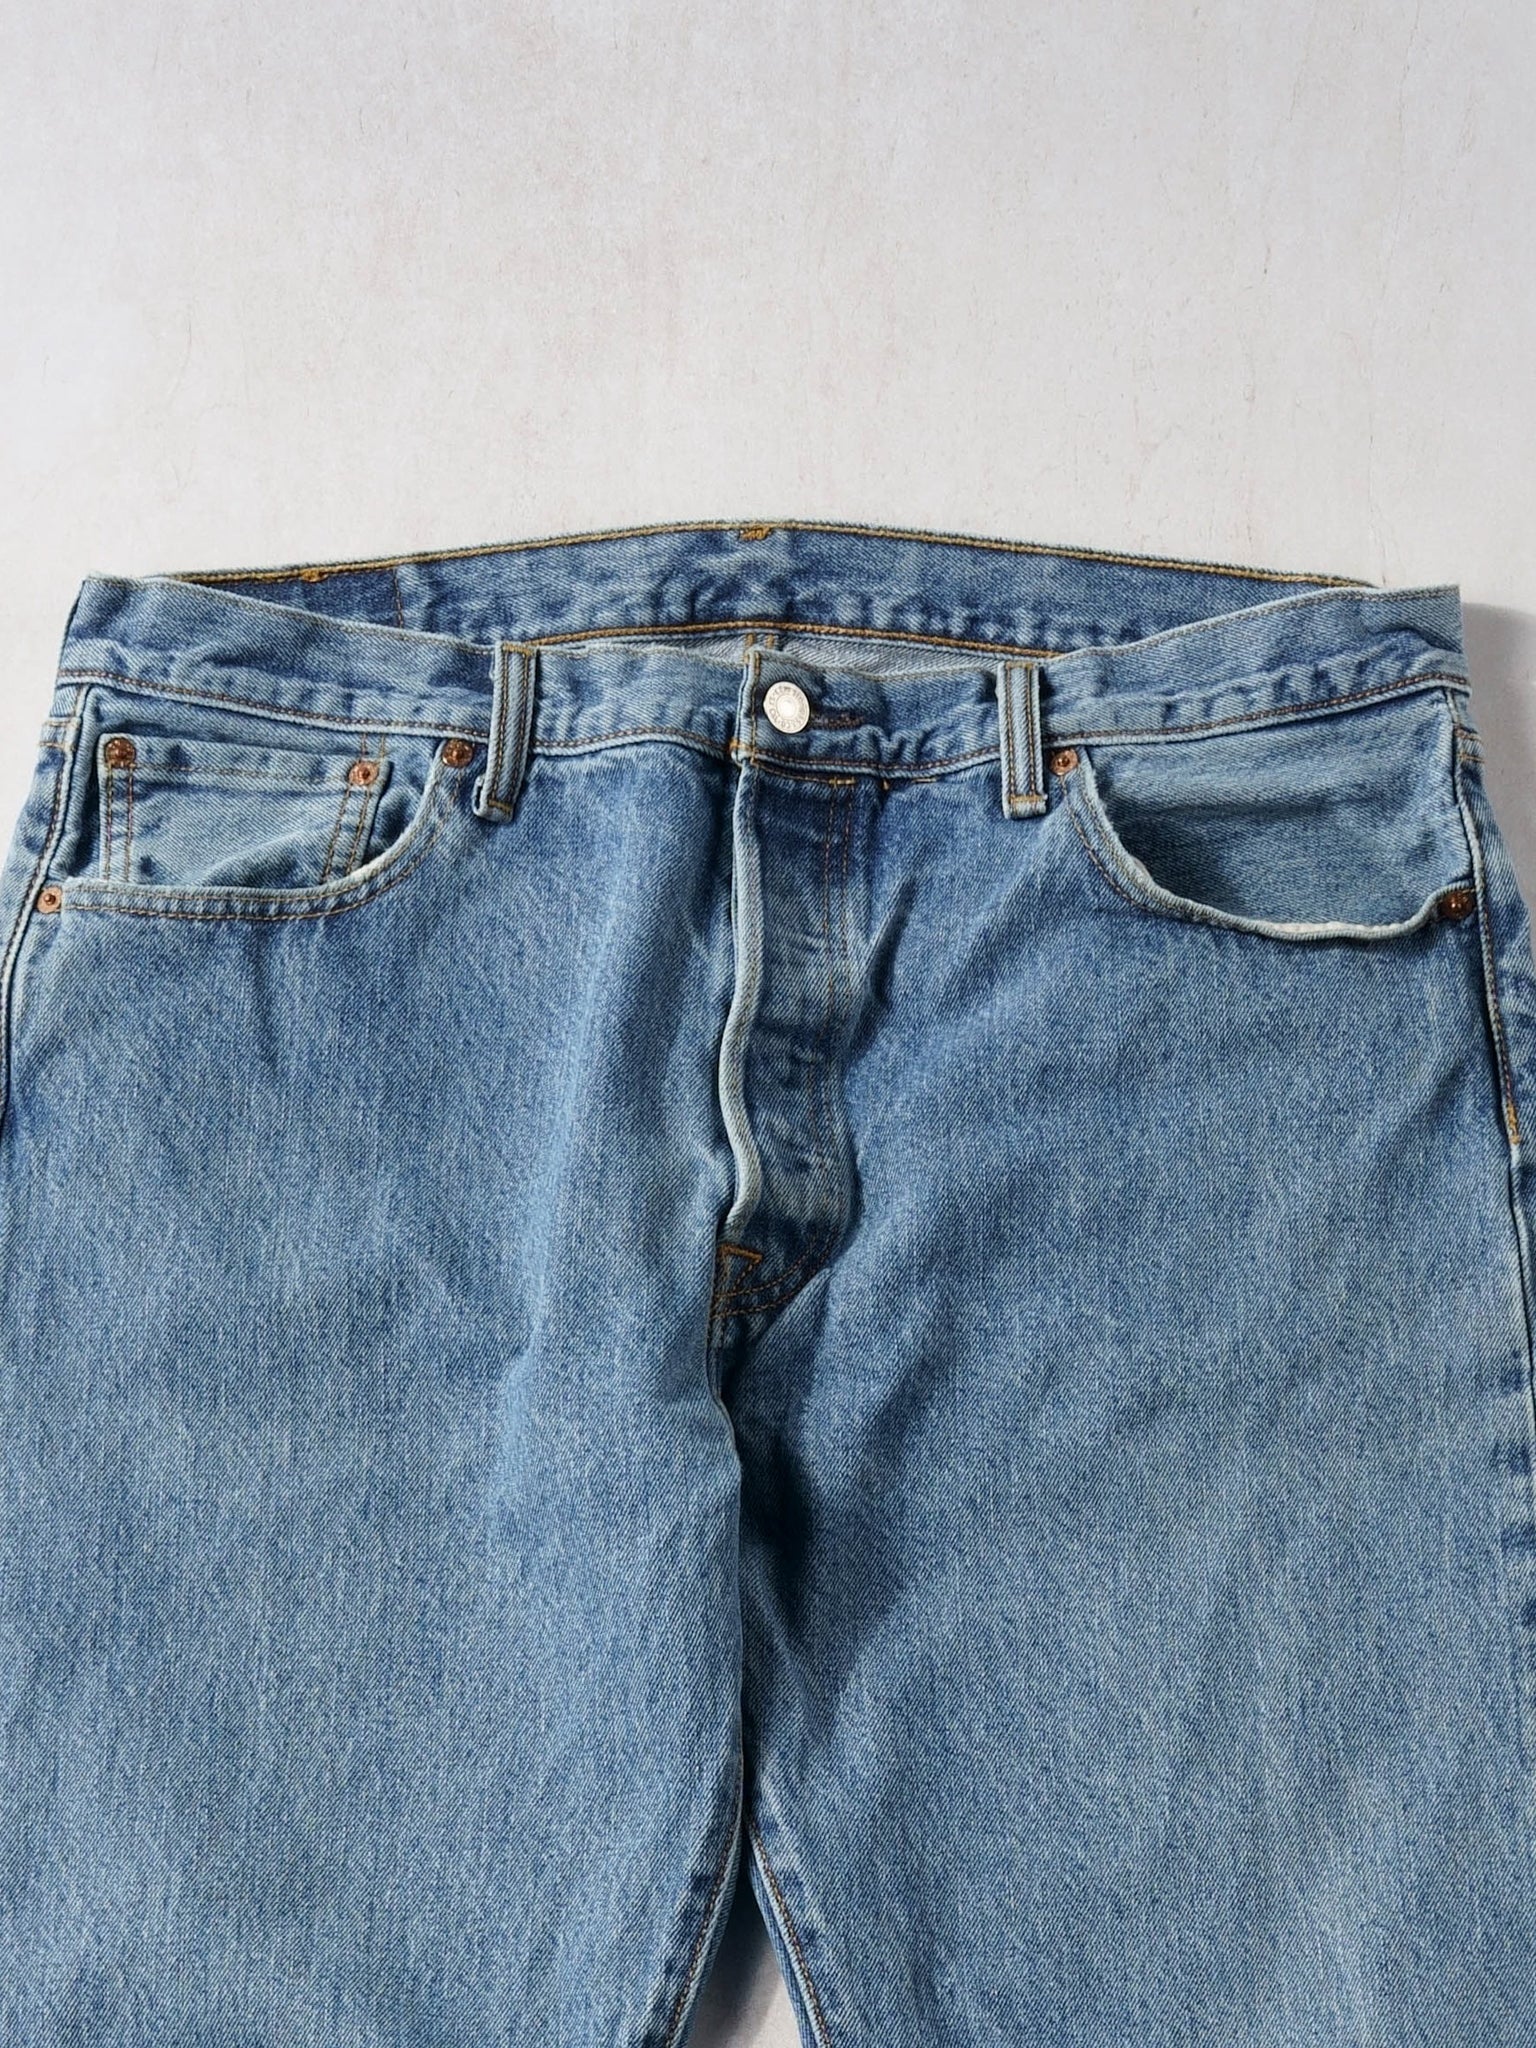 Vintage 90s Blue Levi's 501 Denim Jeans (36x31)